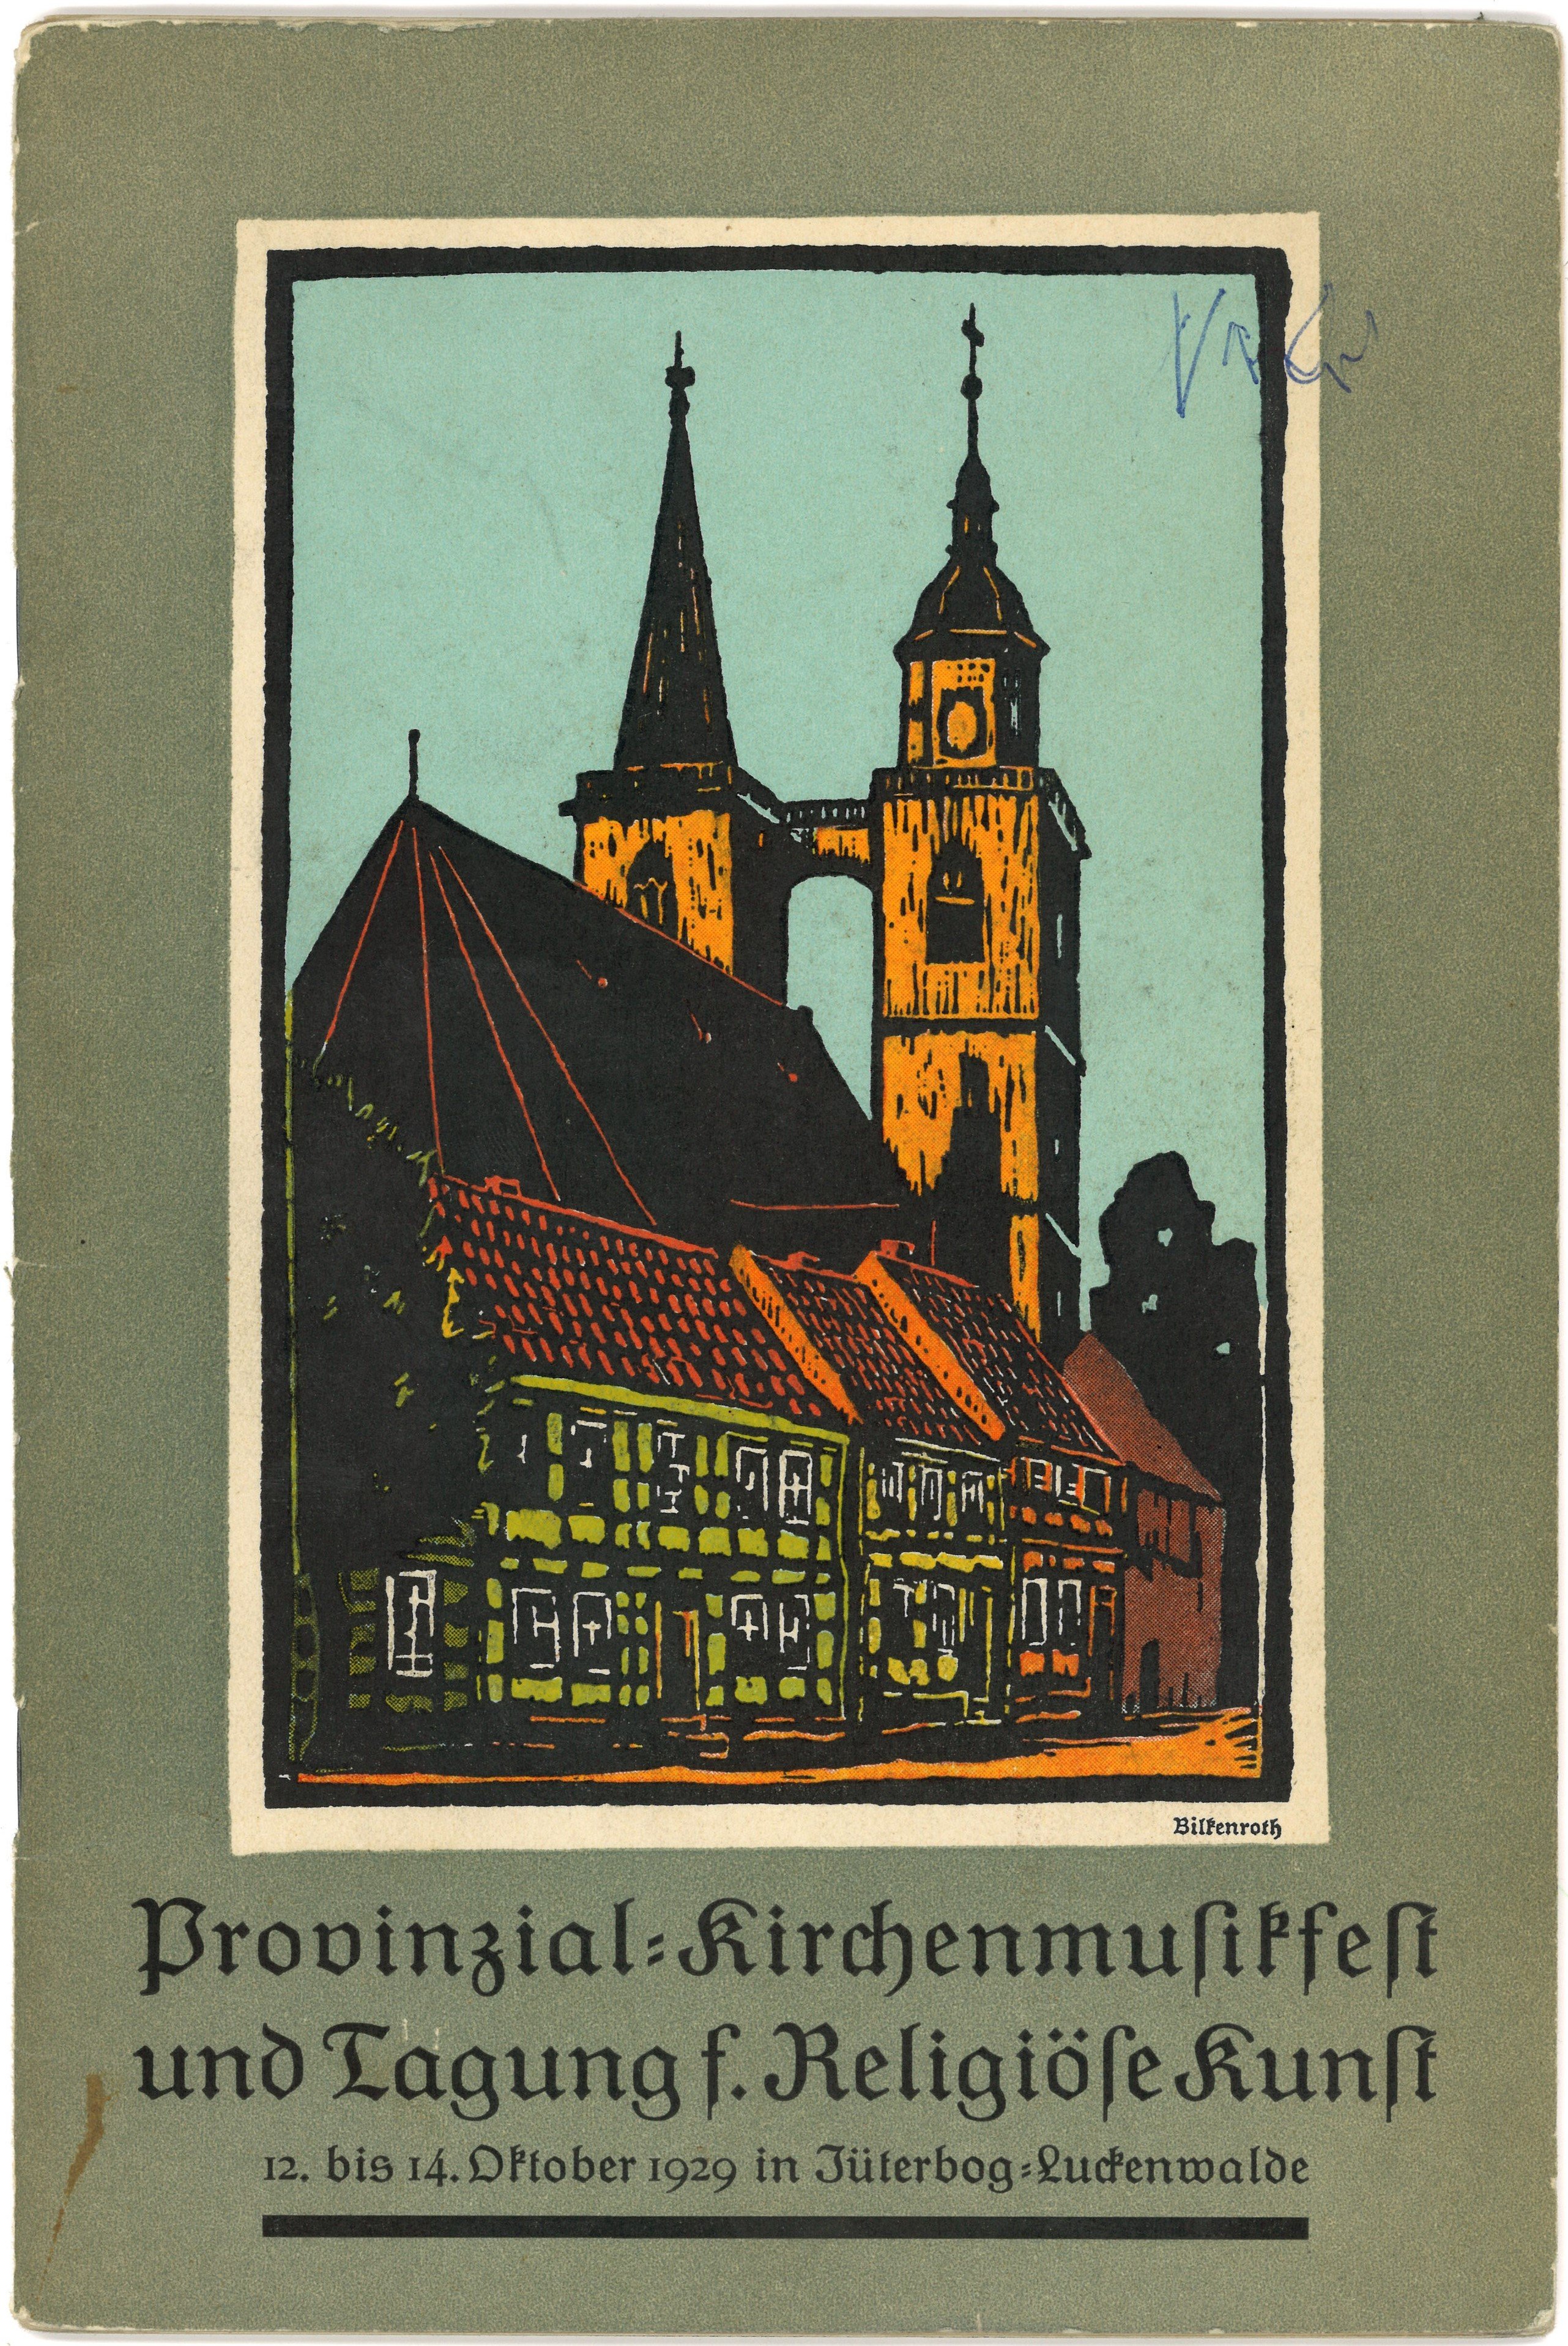 Programm-Buch zum Provinzial-Kirchenmusikfest 1929 in Luckenwalde und Jüterbog (Landesgeschichtliche Vereinigung für die Mark Brandenburg e.V., Archiv CC BY)